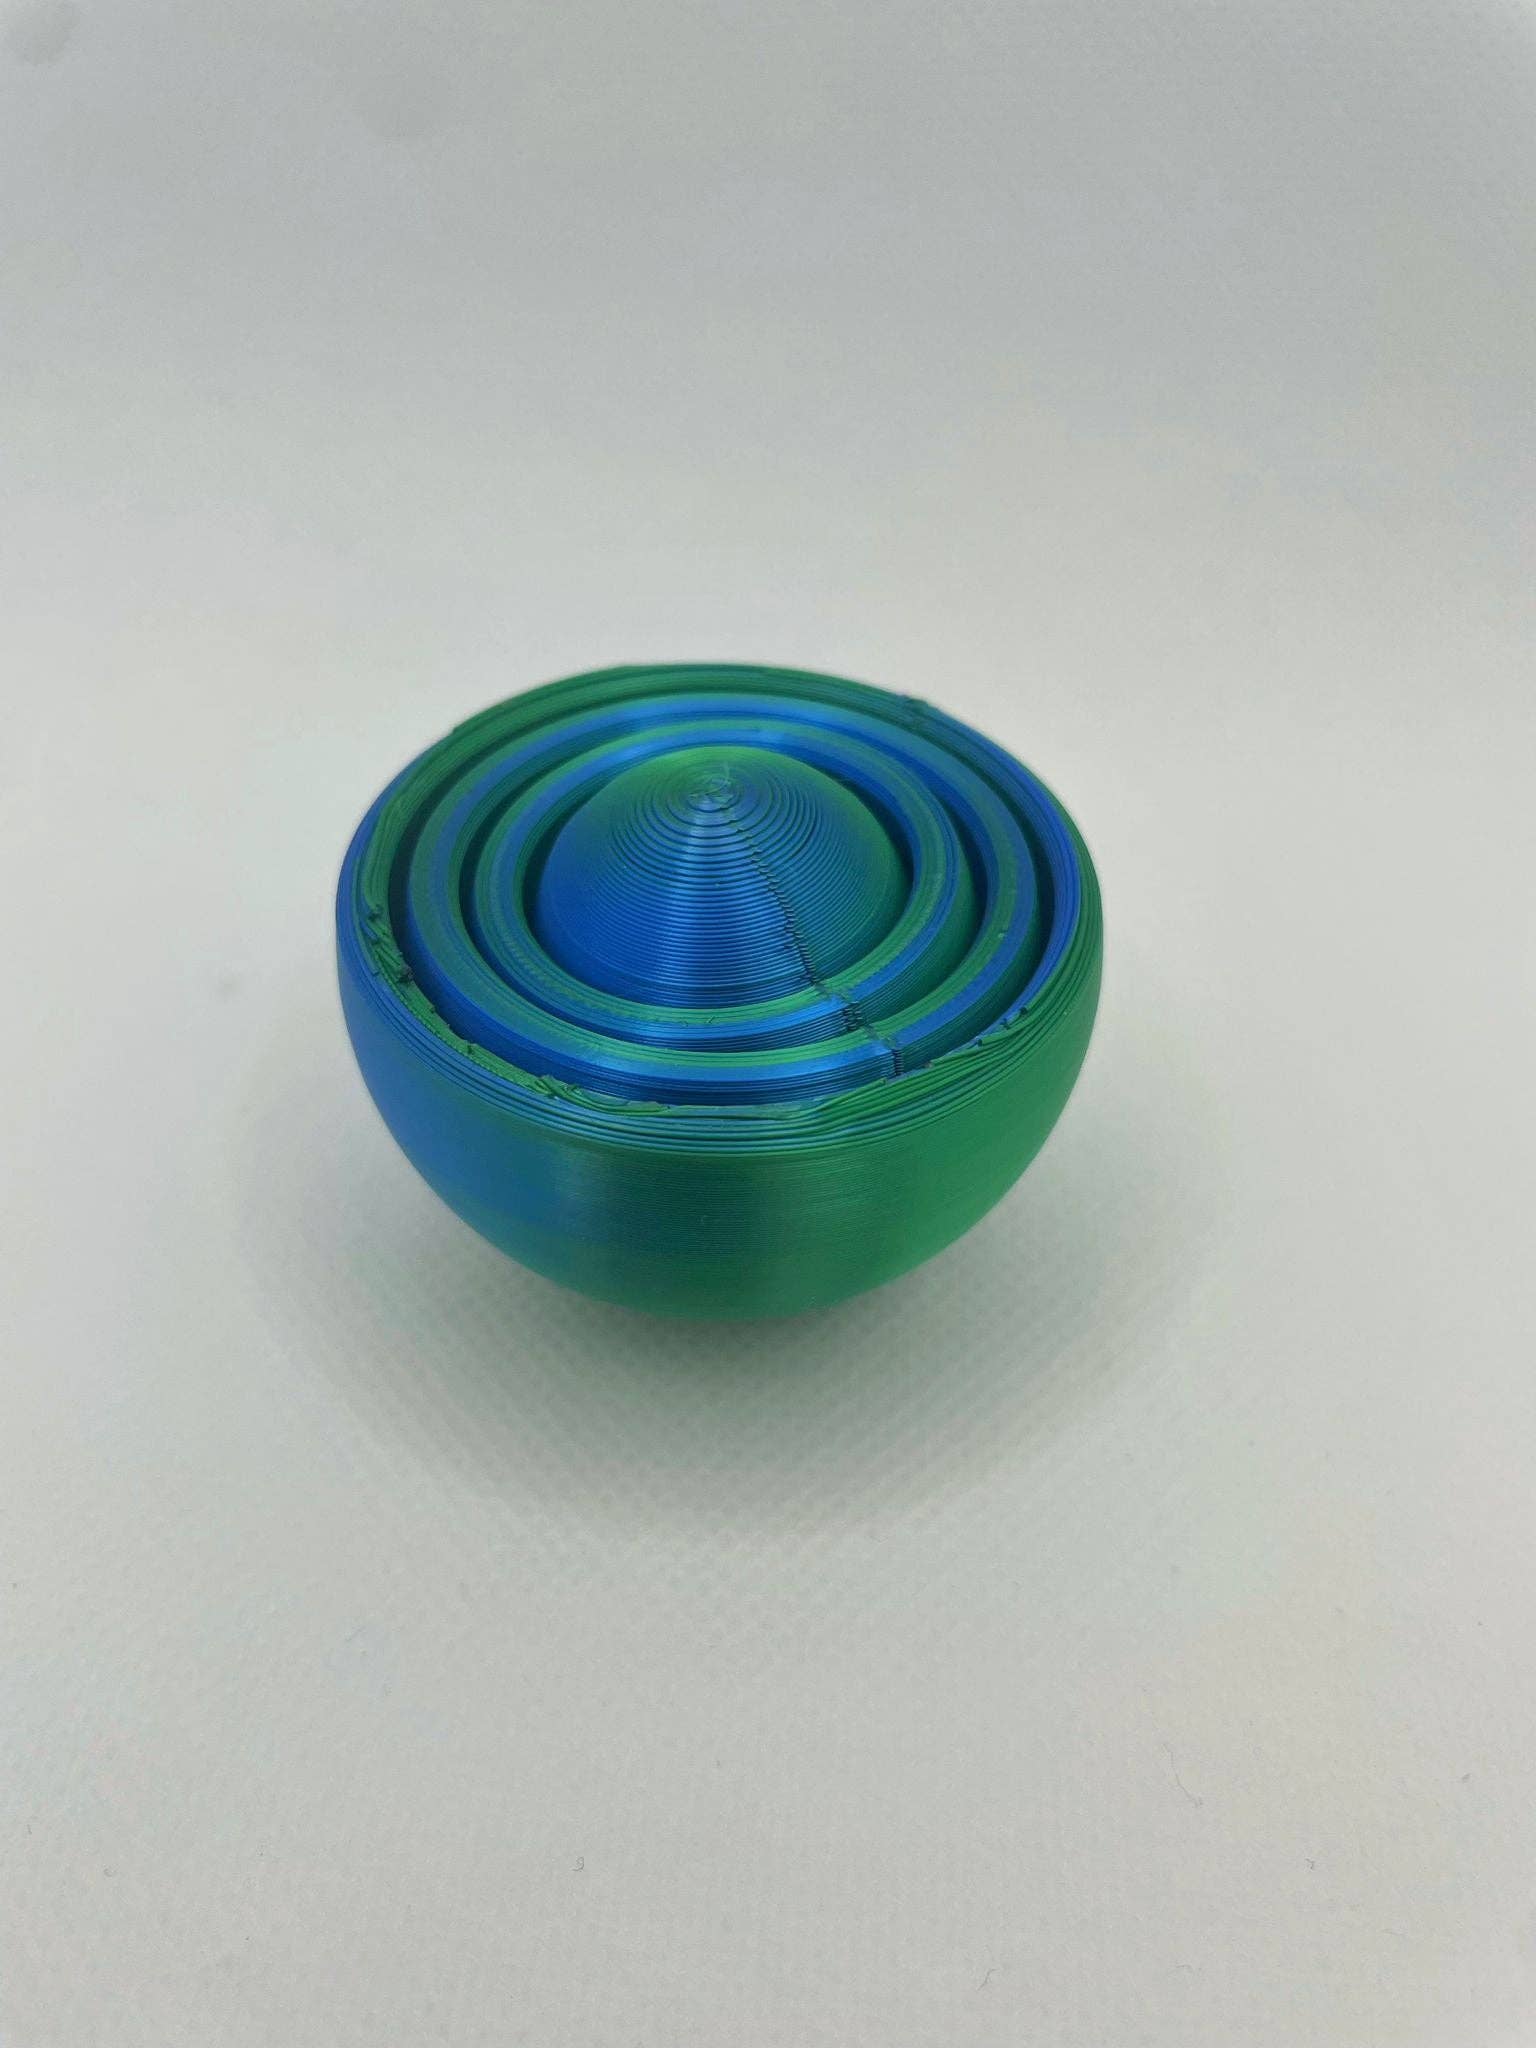 Gyroscope Fidget Spinner - Blue Green